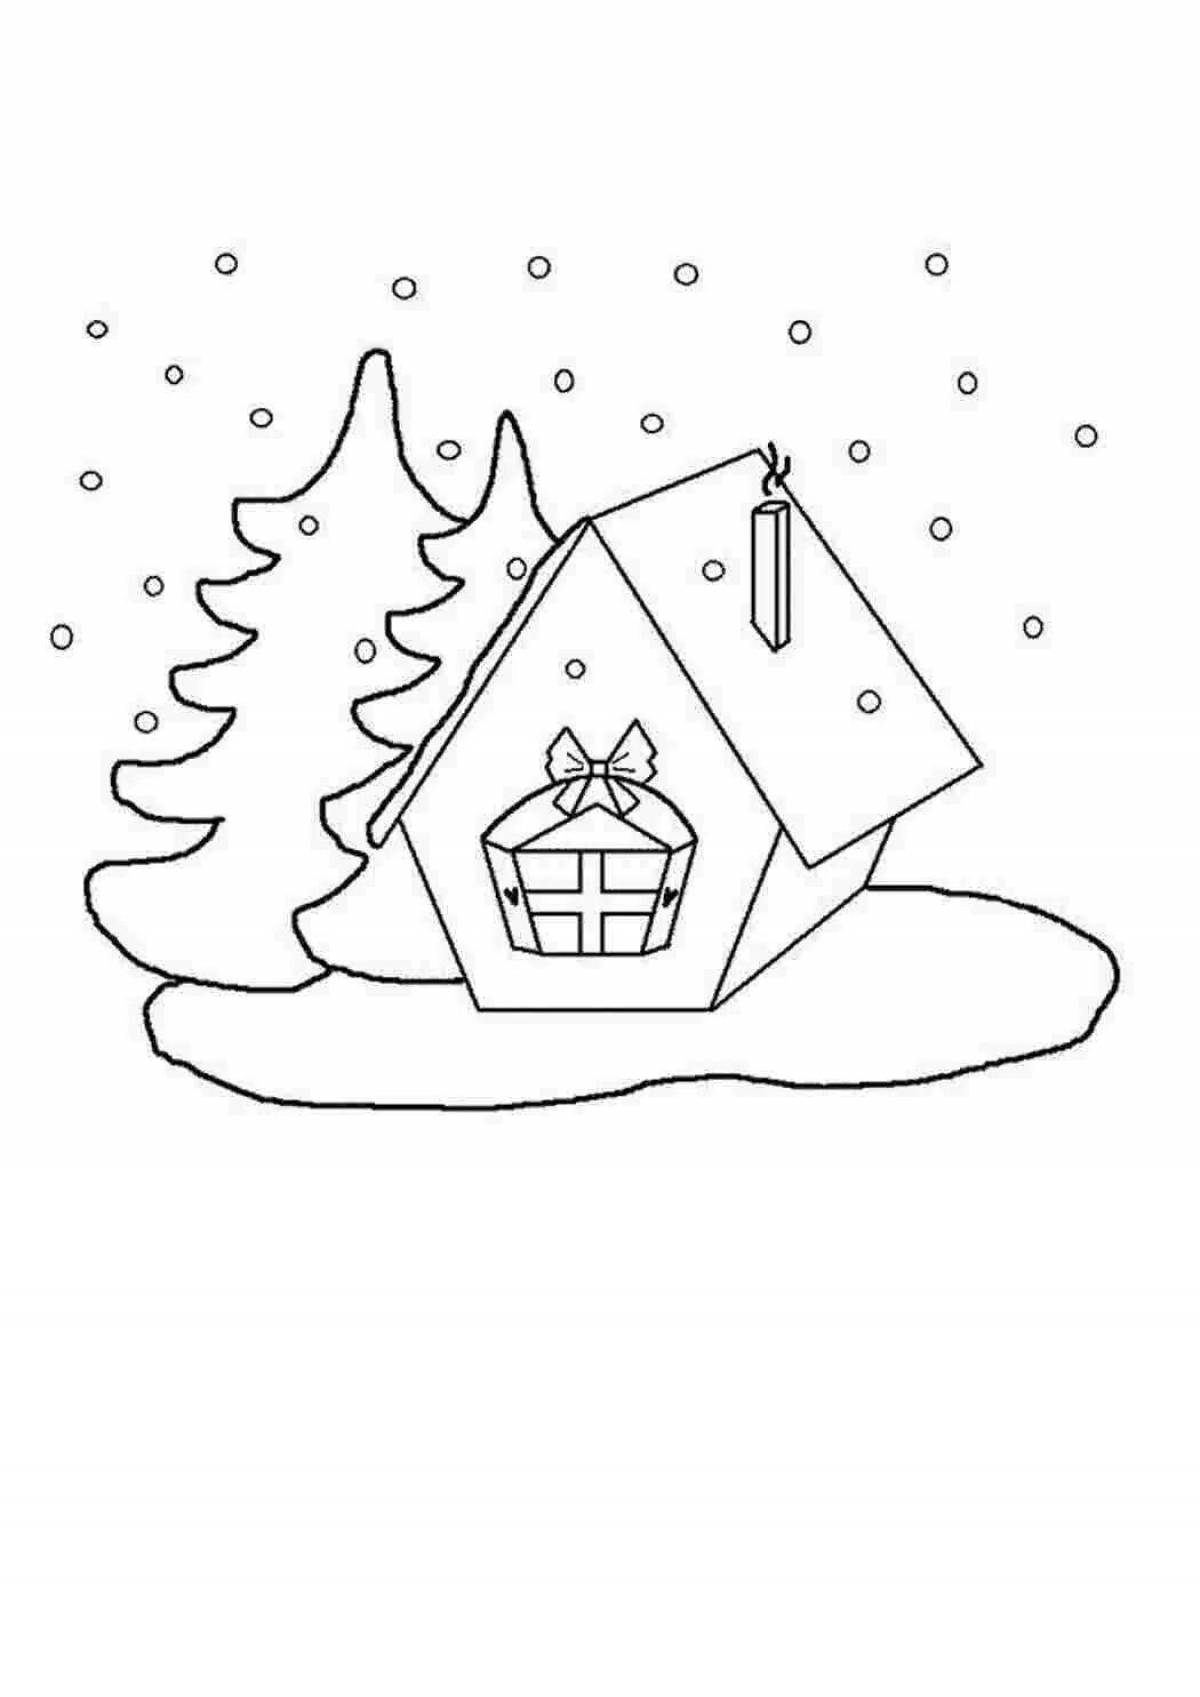 Раскраска зимний домик для игр для детей